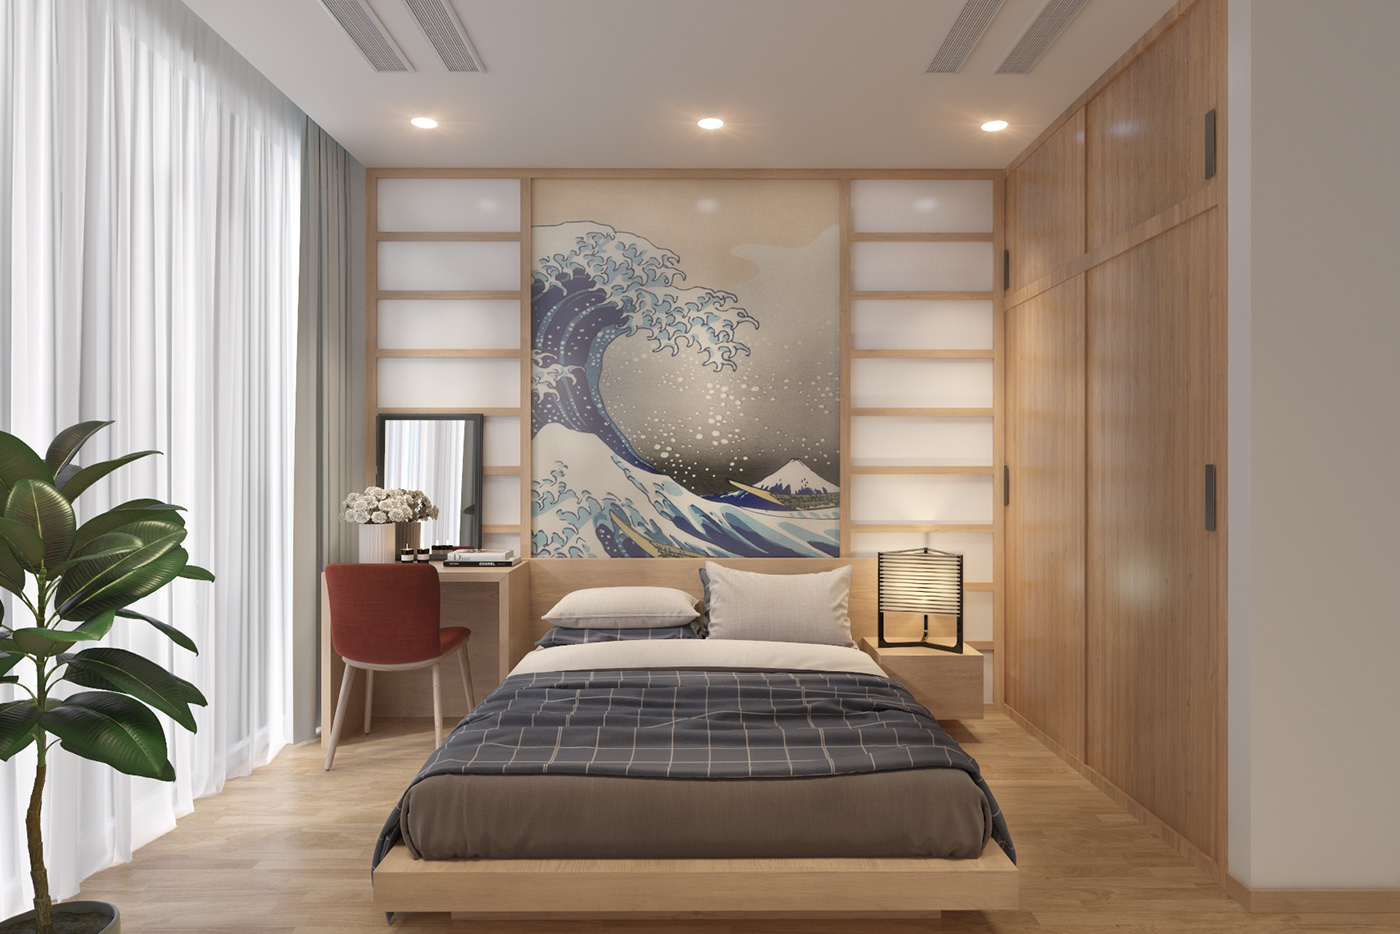 Một số cách trang trí phòng ngủ đẹp 2021 gợi ý cho bạn